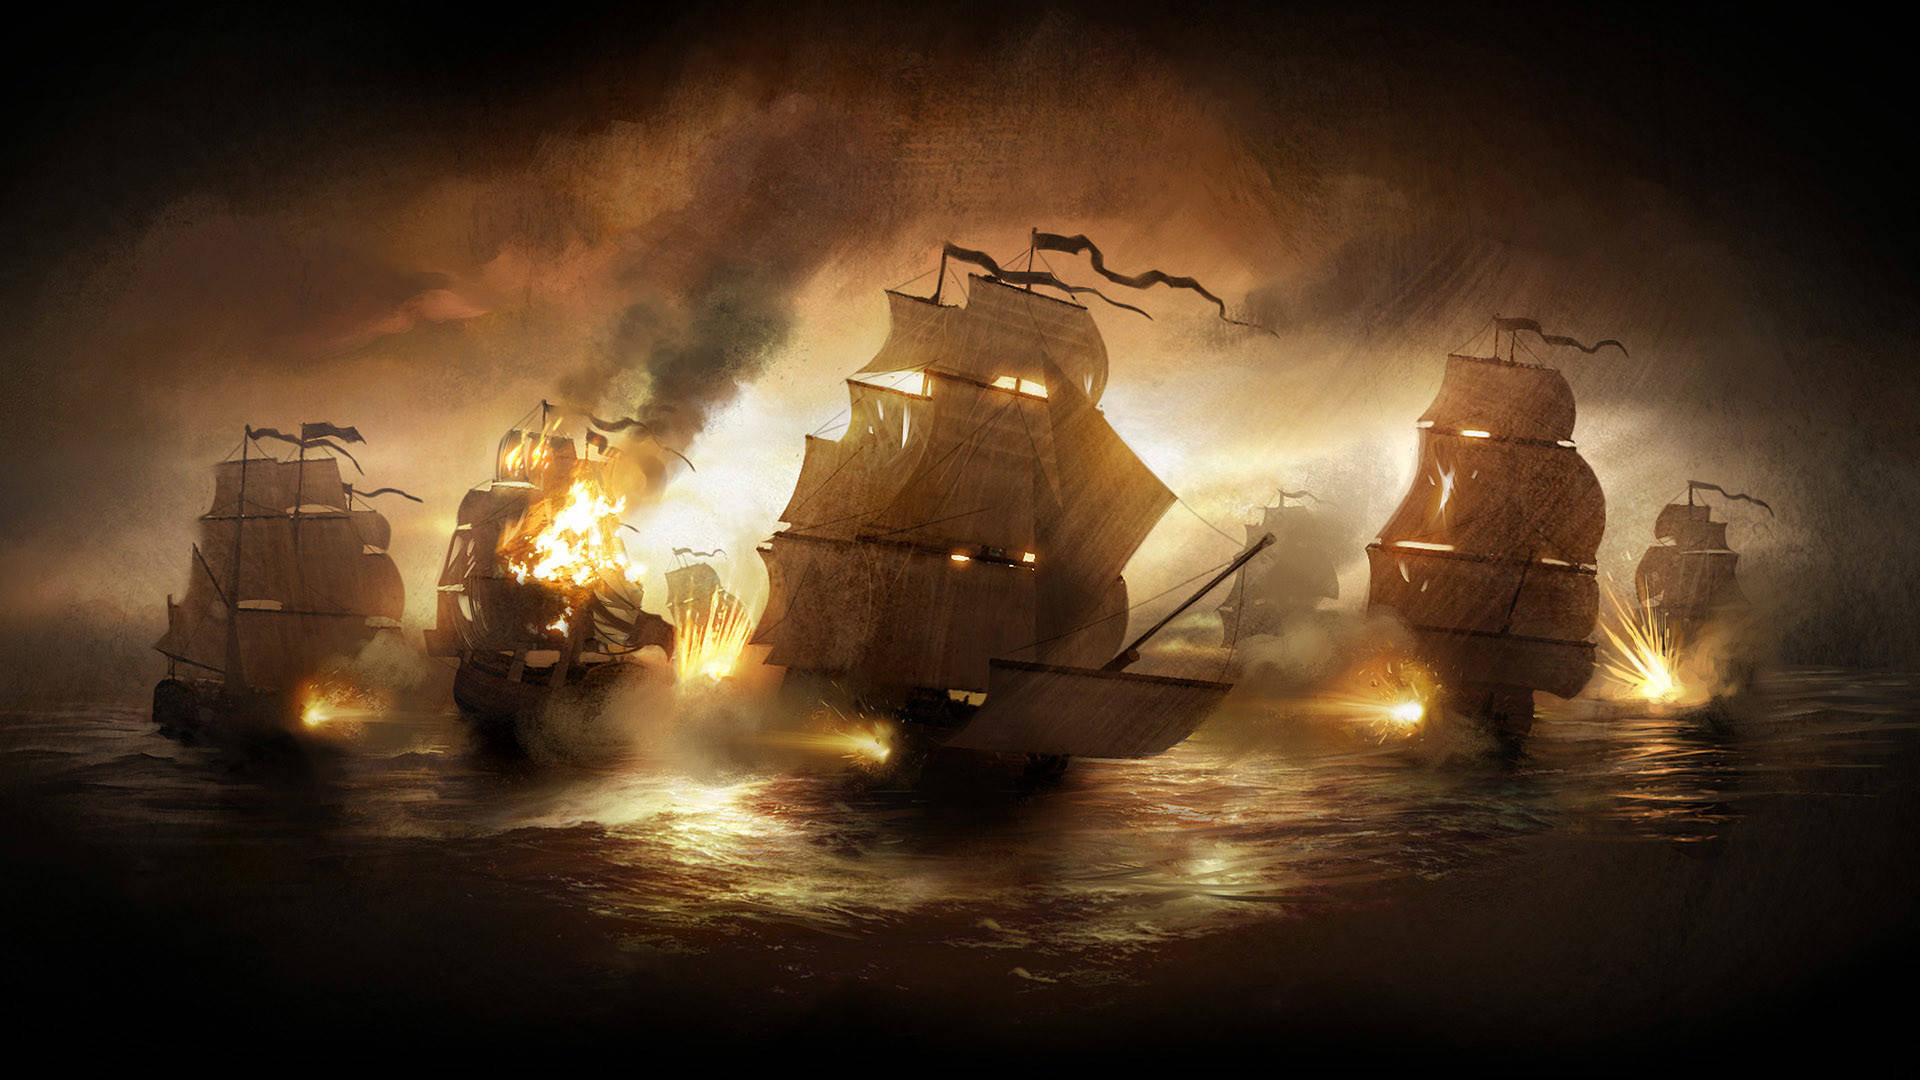 Pirate Ship On Fire Best Desktop Wallpaper